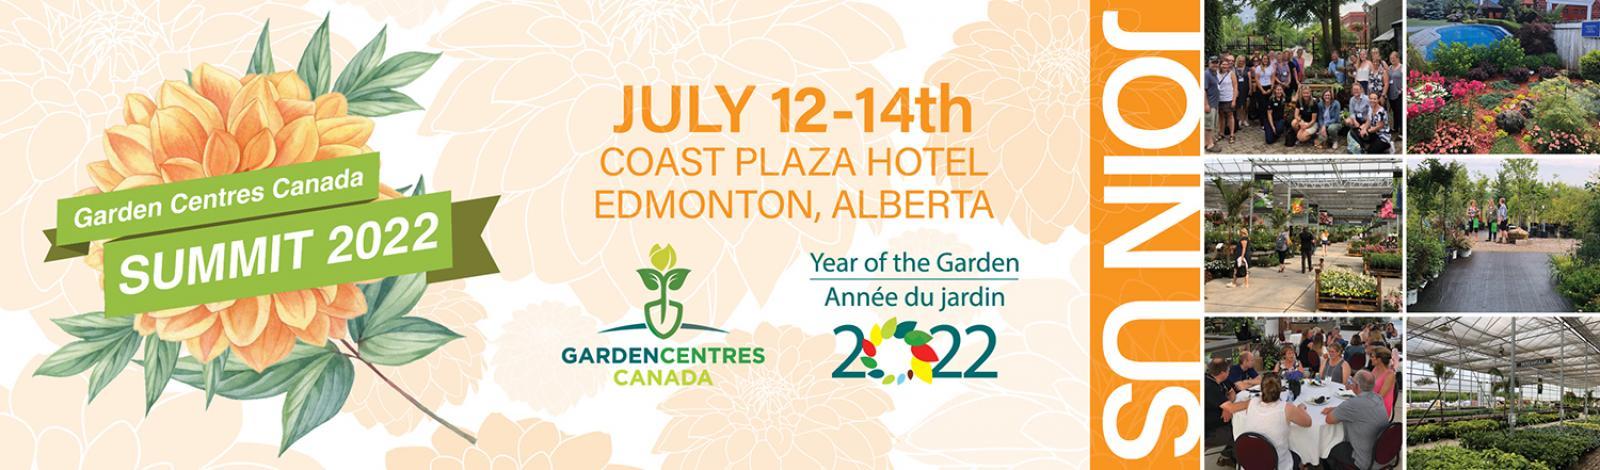 Garden Centres Canada set for July 12-14 in Edmonton